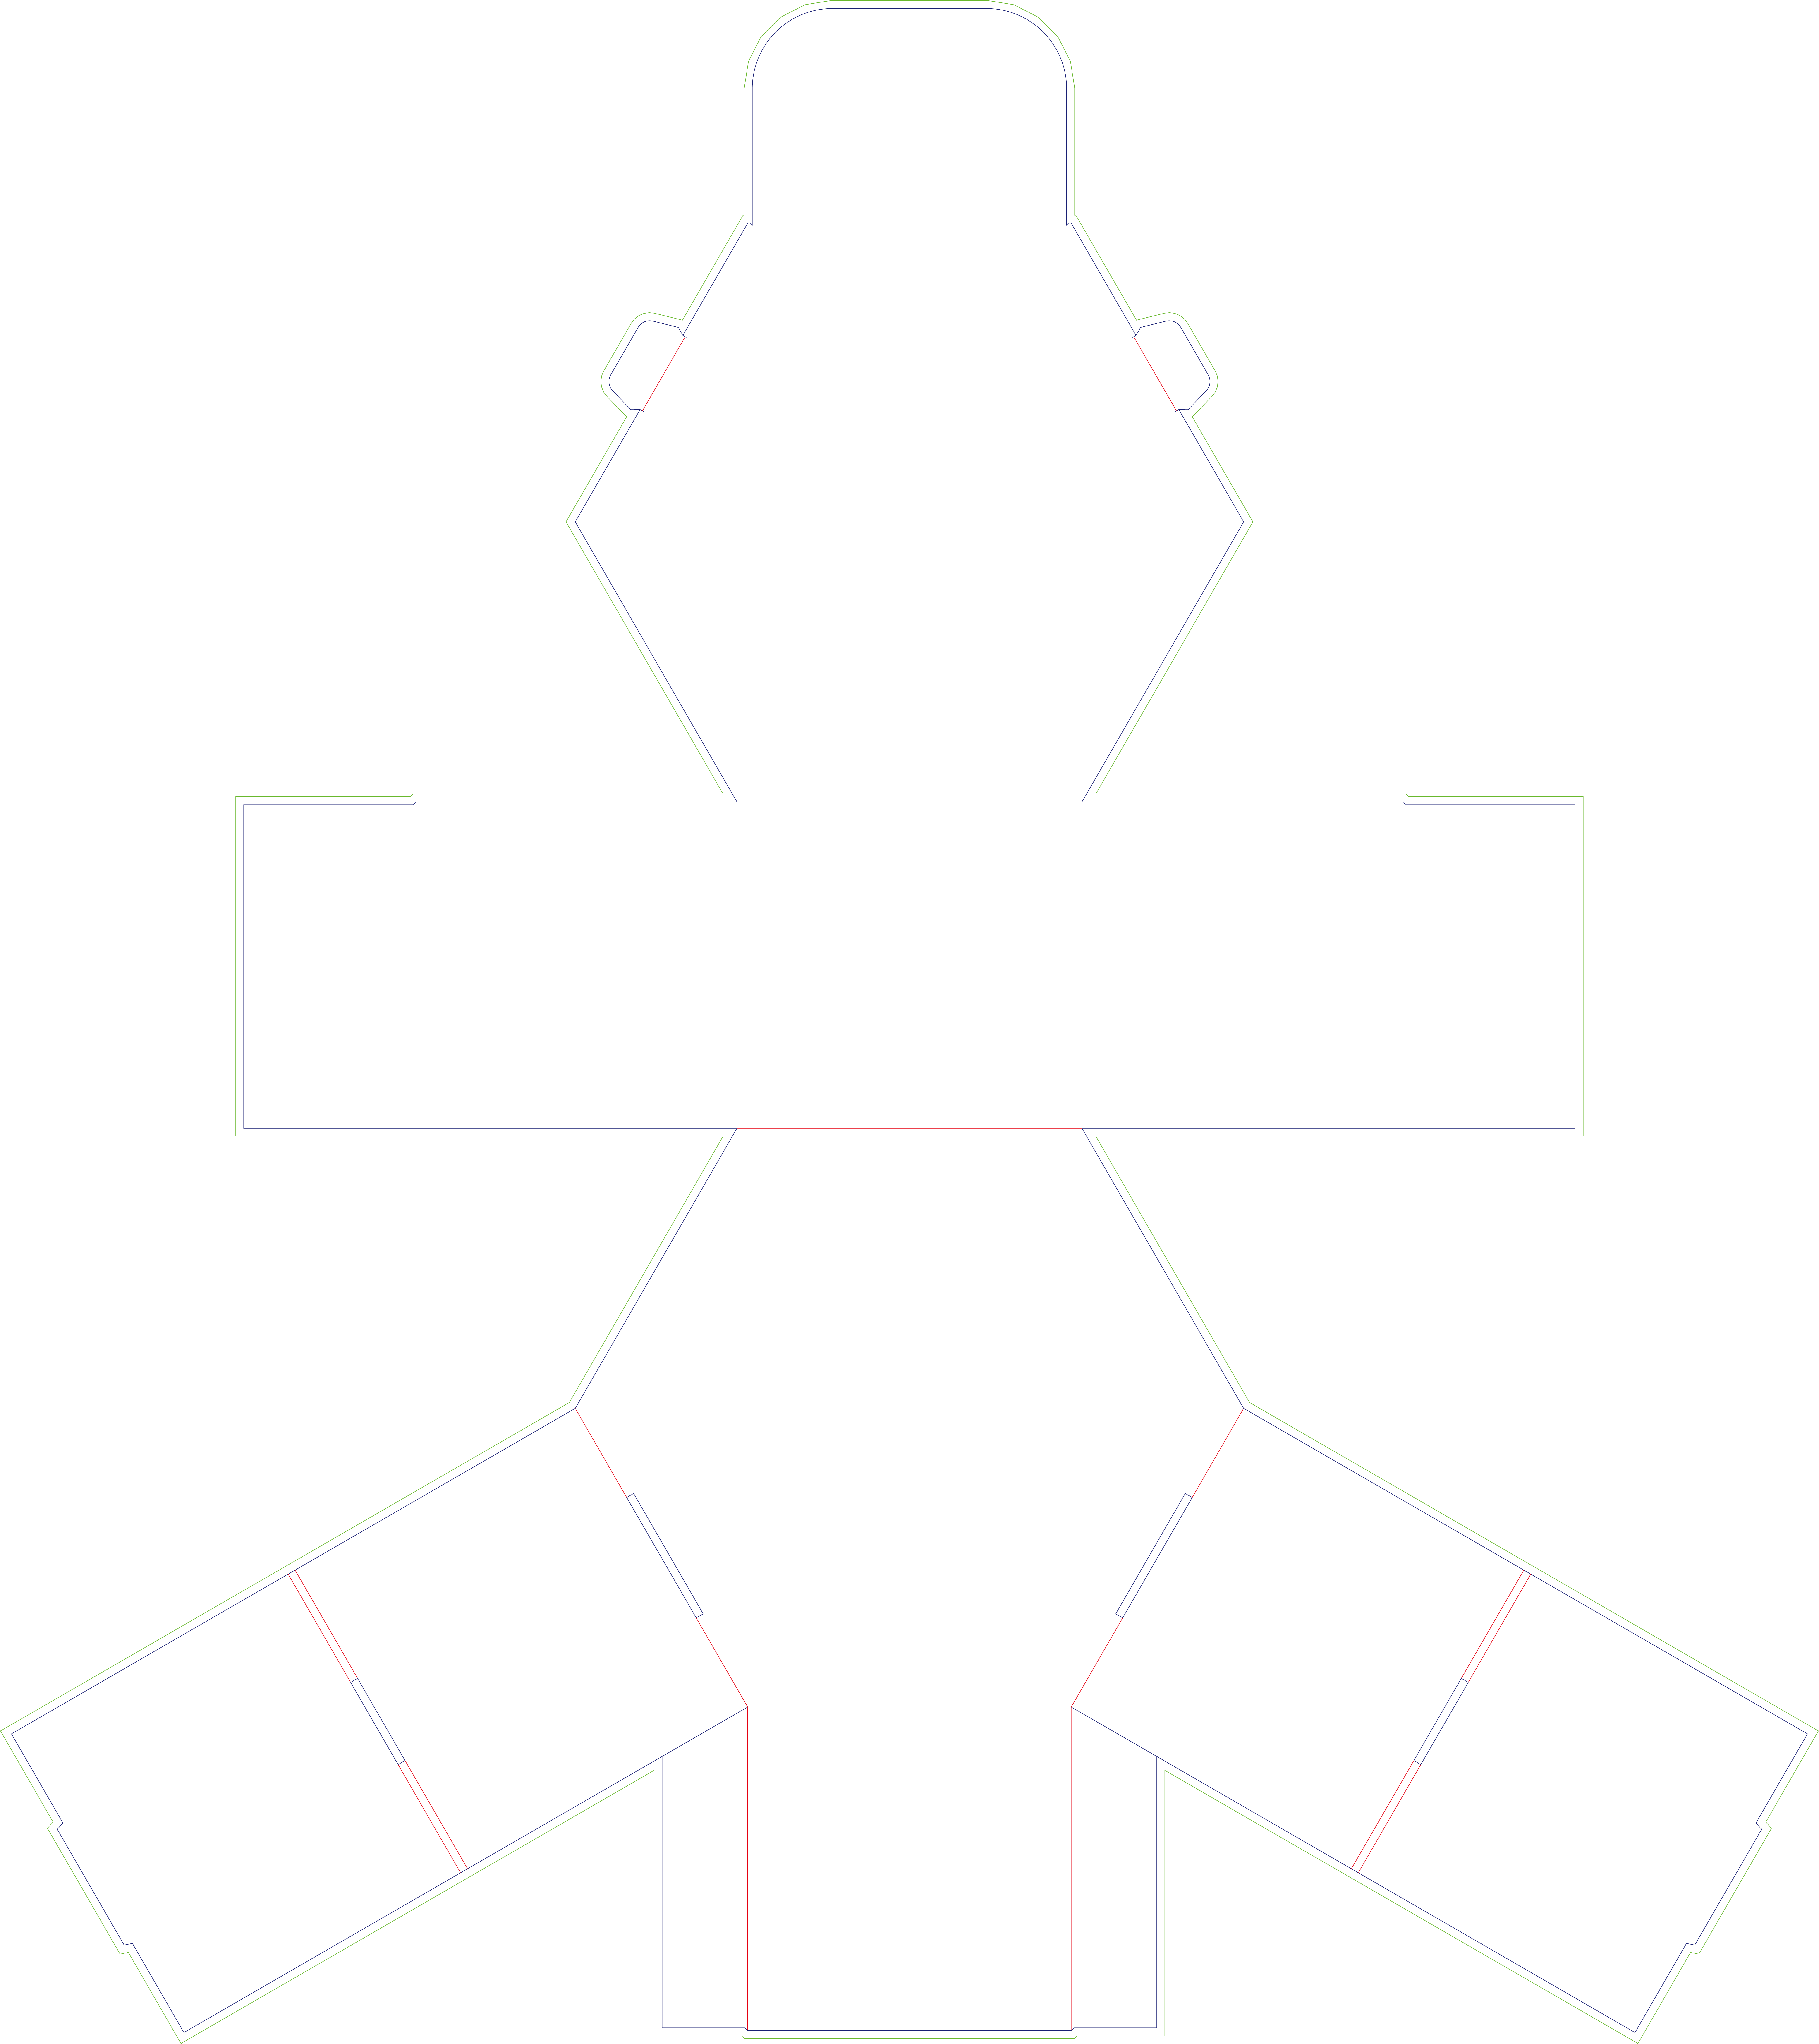 Hexagon Flip Box tuag txiav